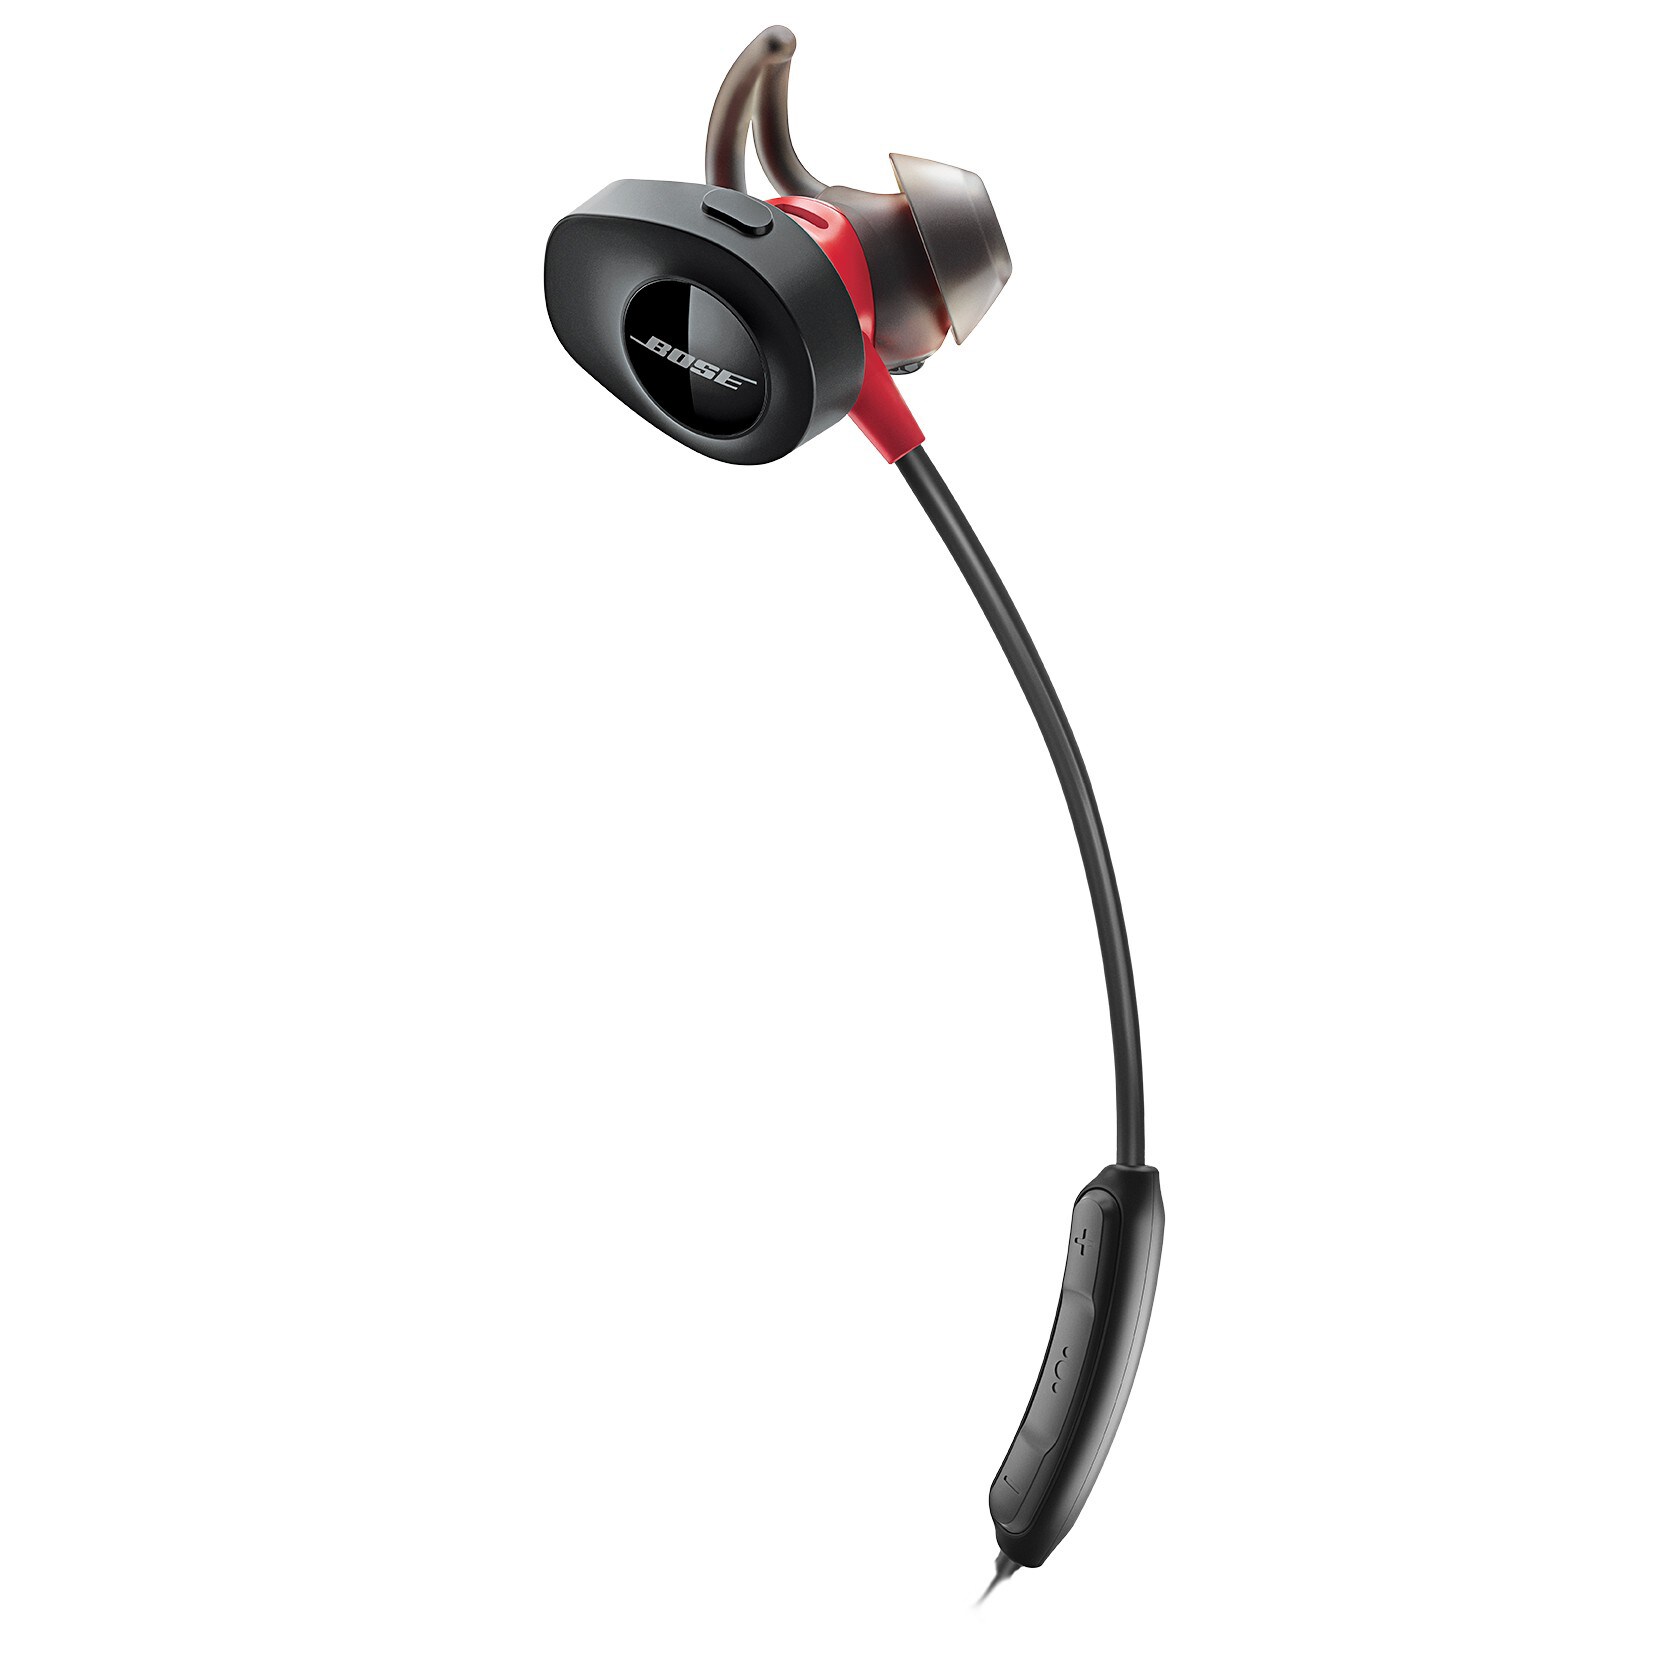 Bose SoundSport trådlösa hörlurar (röd) - Hörlurar - Elgiganten